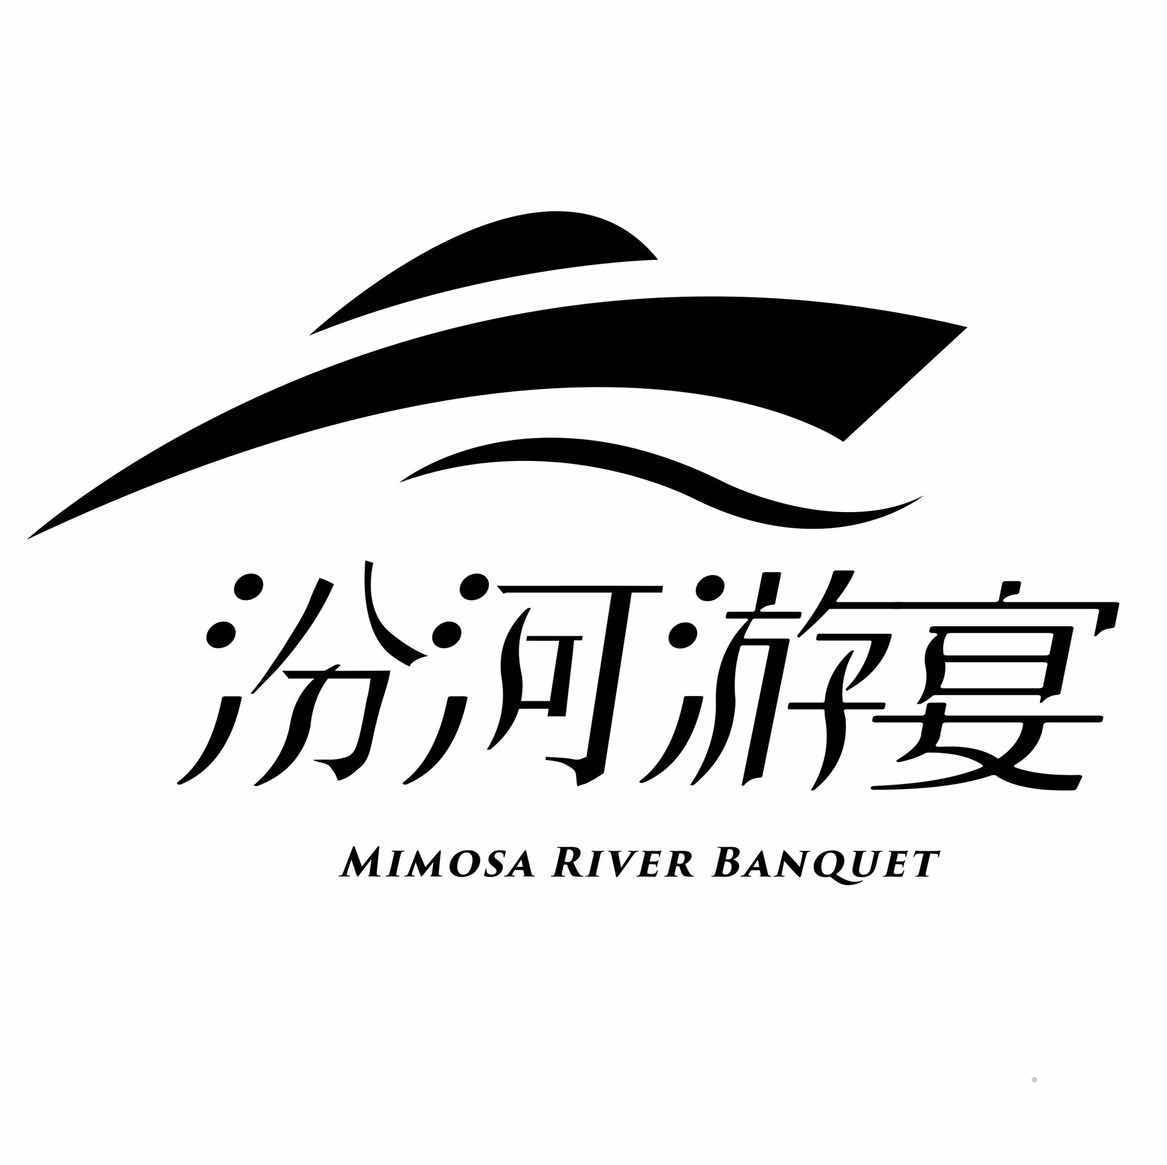 汾河游宴 MIMOSA RIVER BANQUET食品